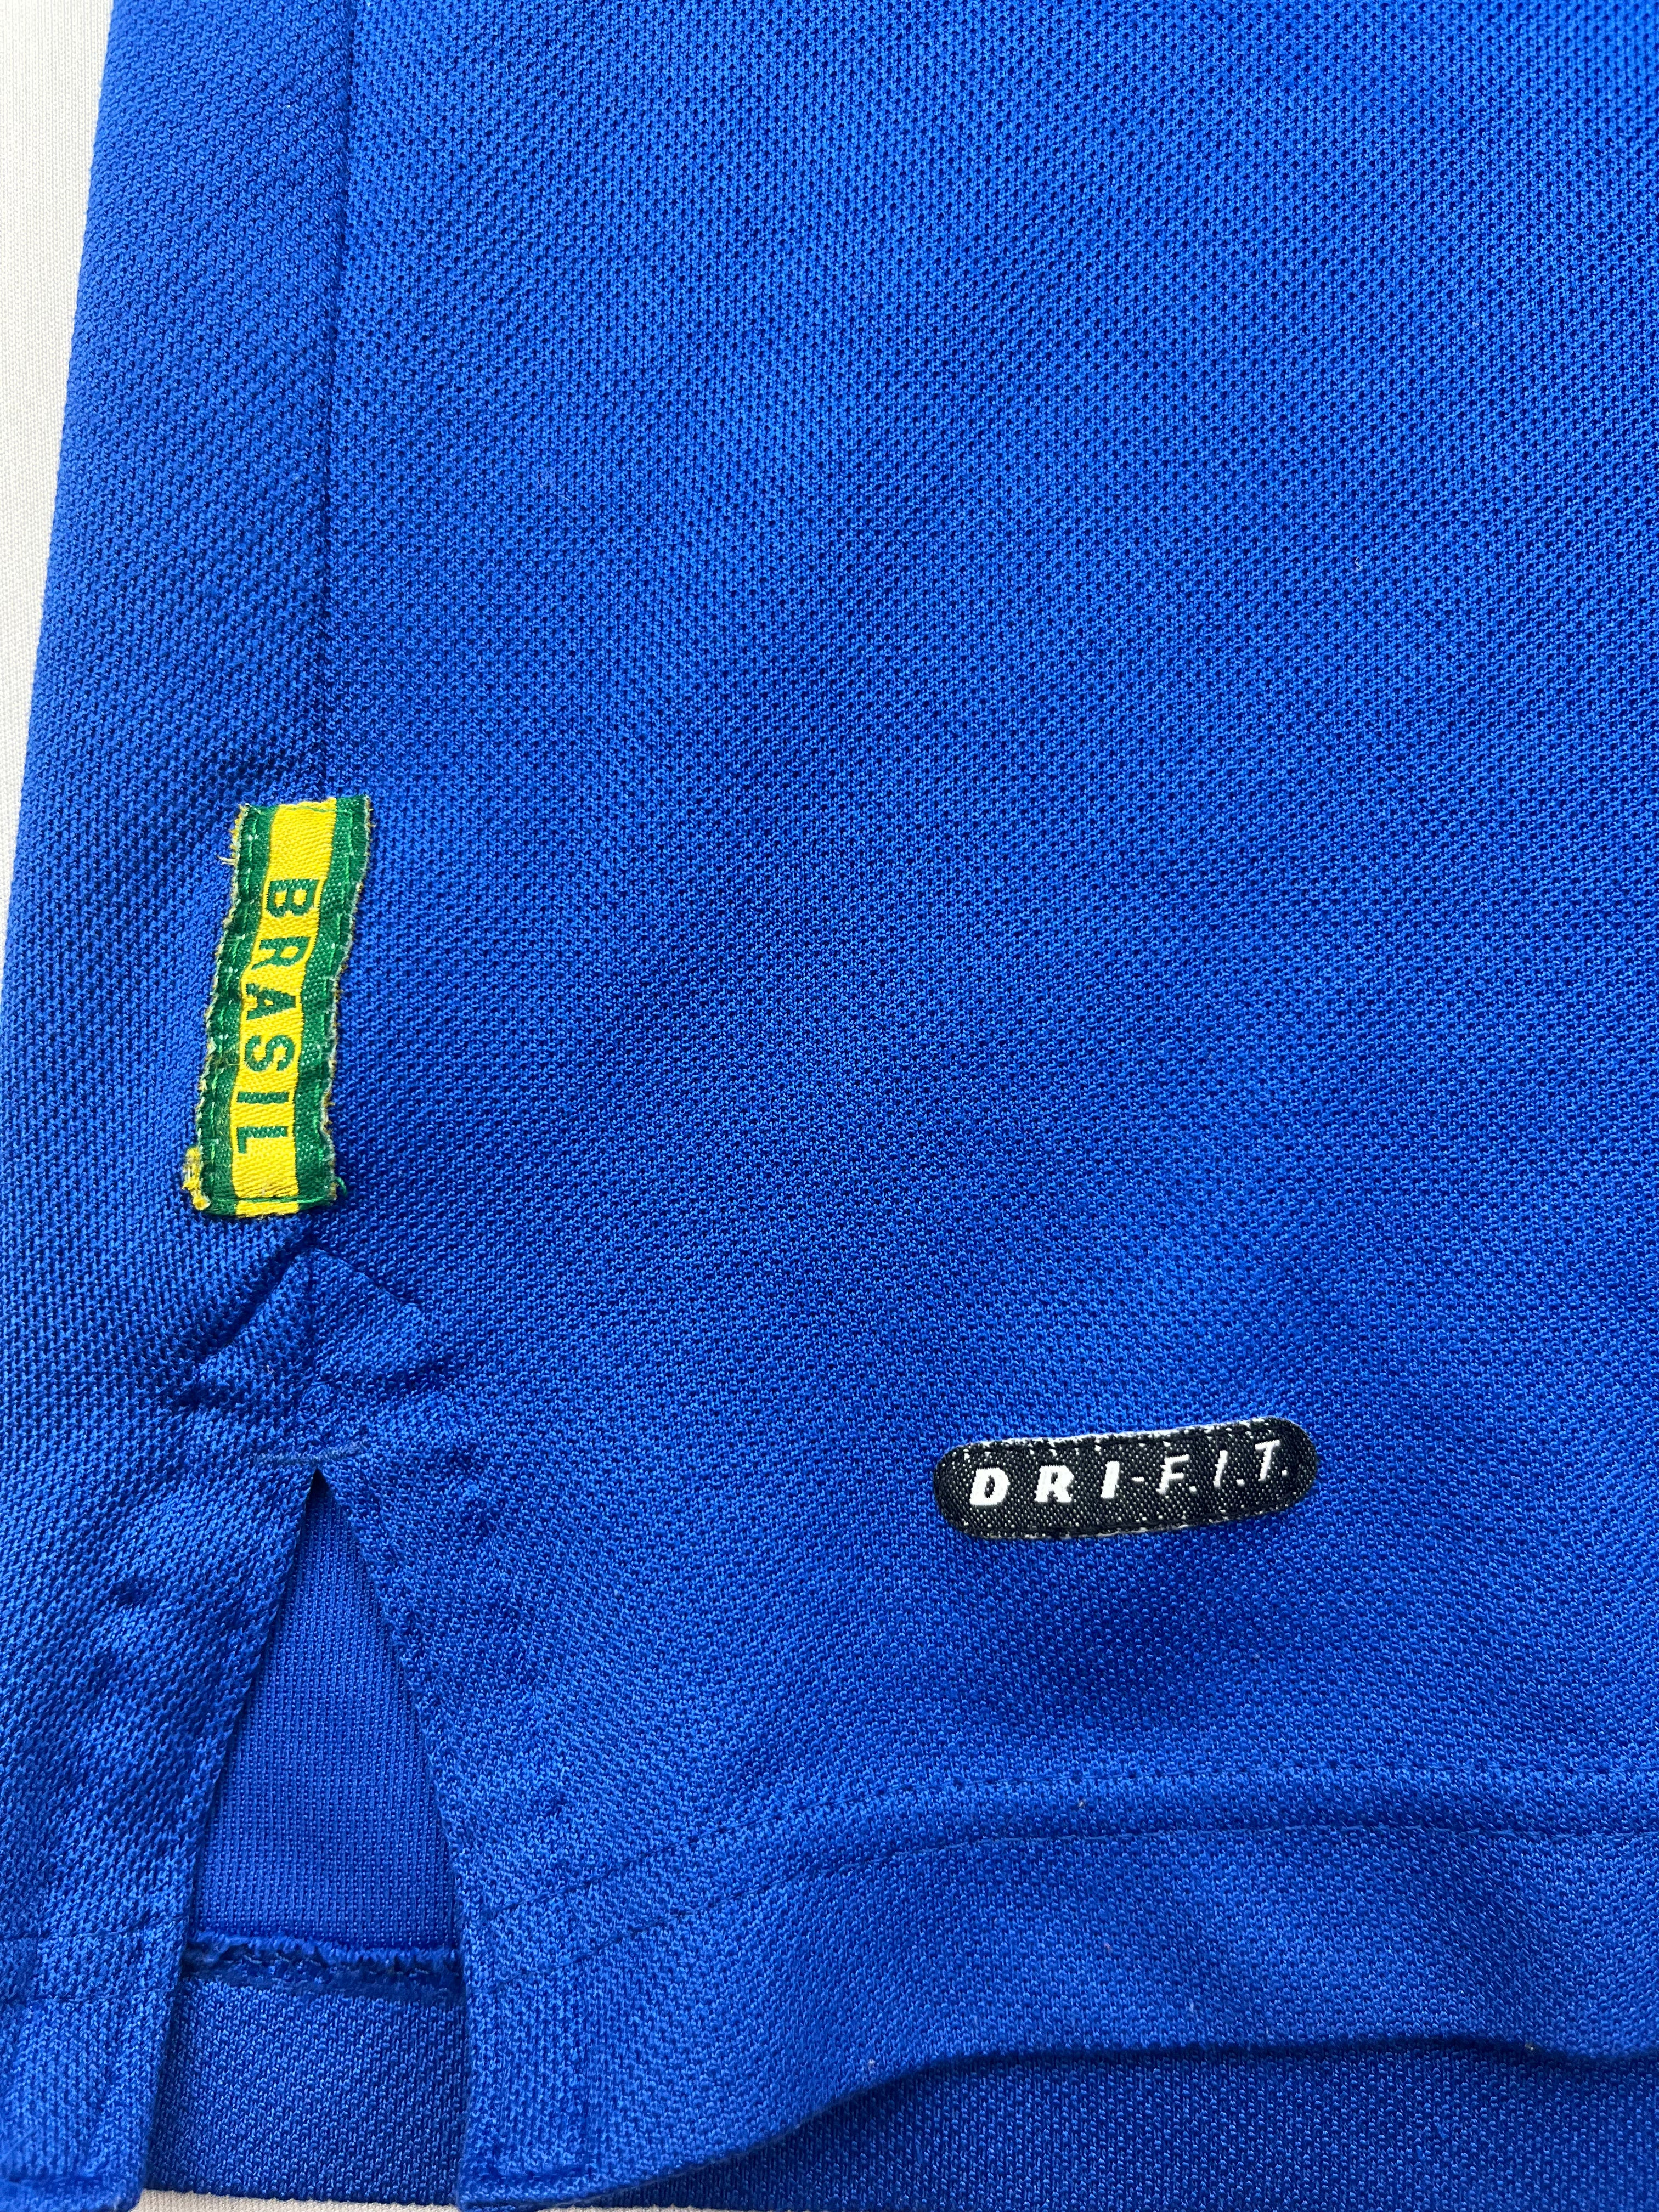 BNWT Brazil Away Football Shirt 1998/00 Adults XL - Depop